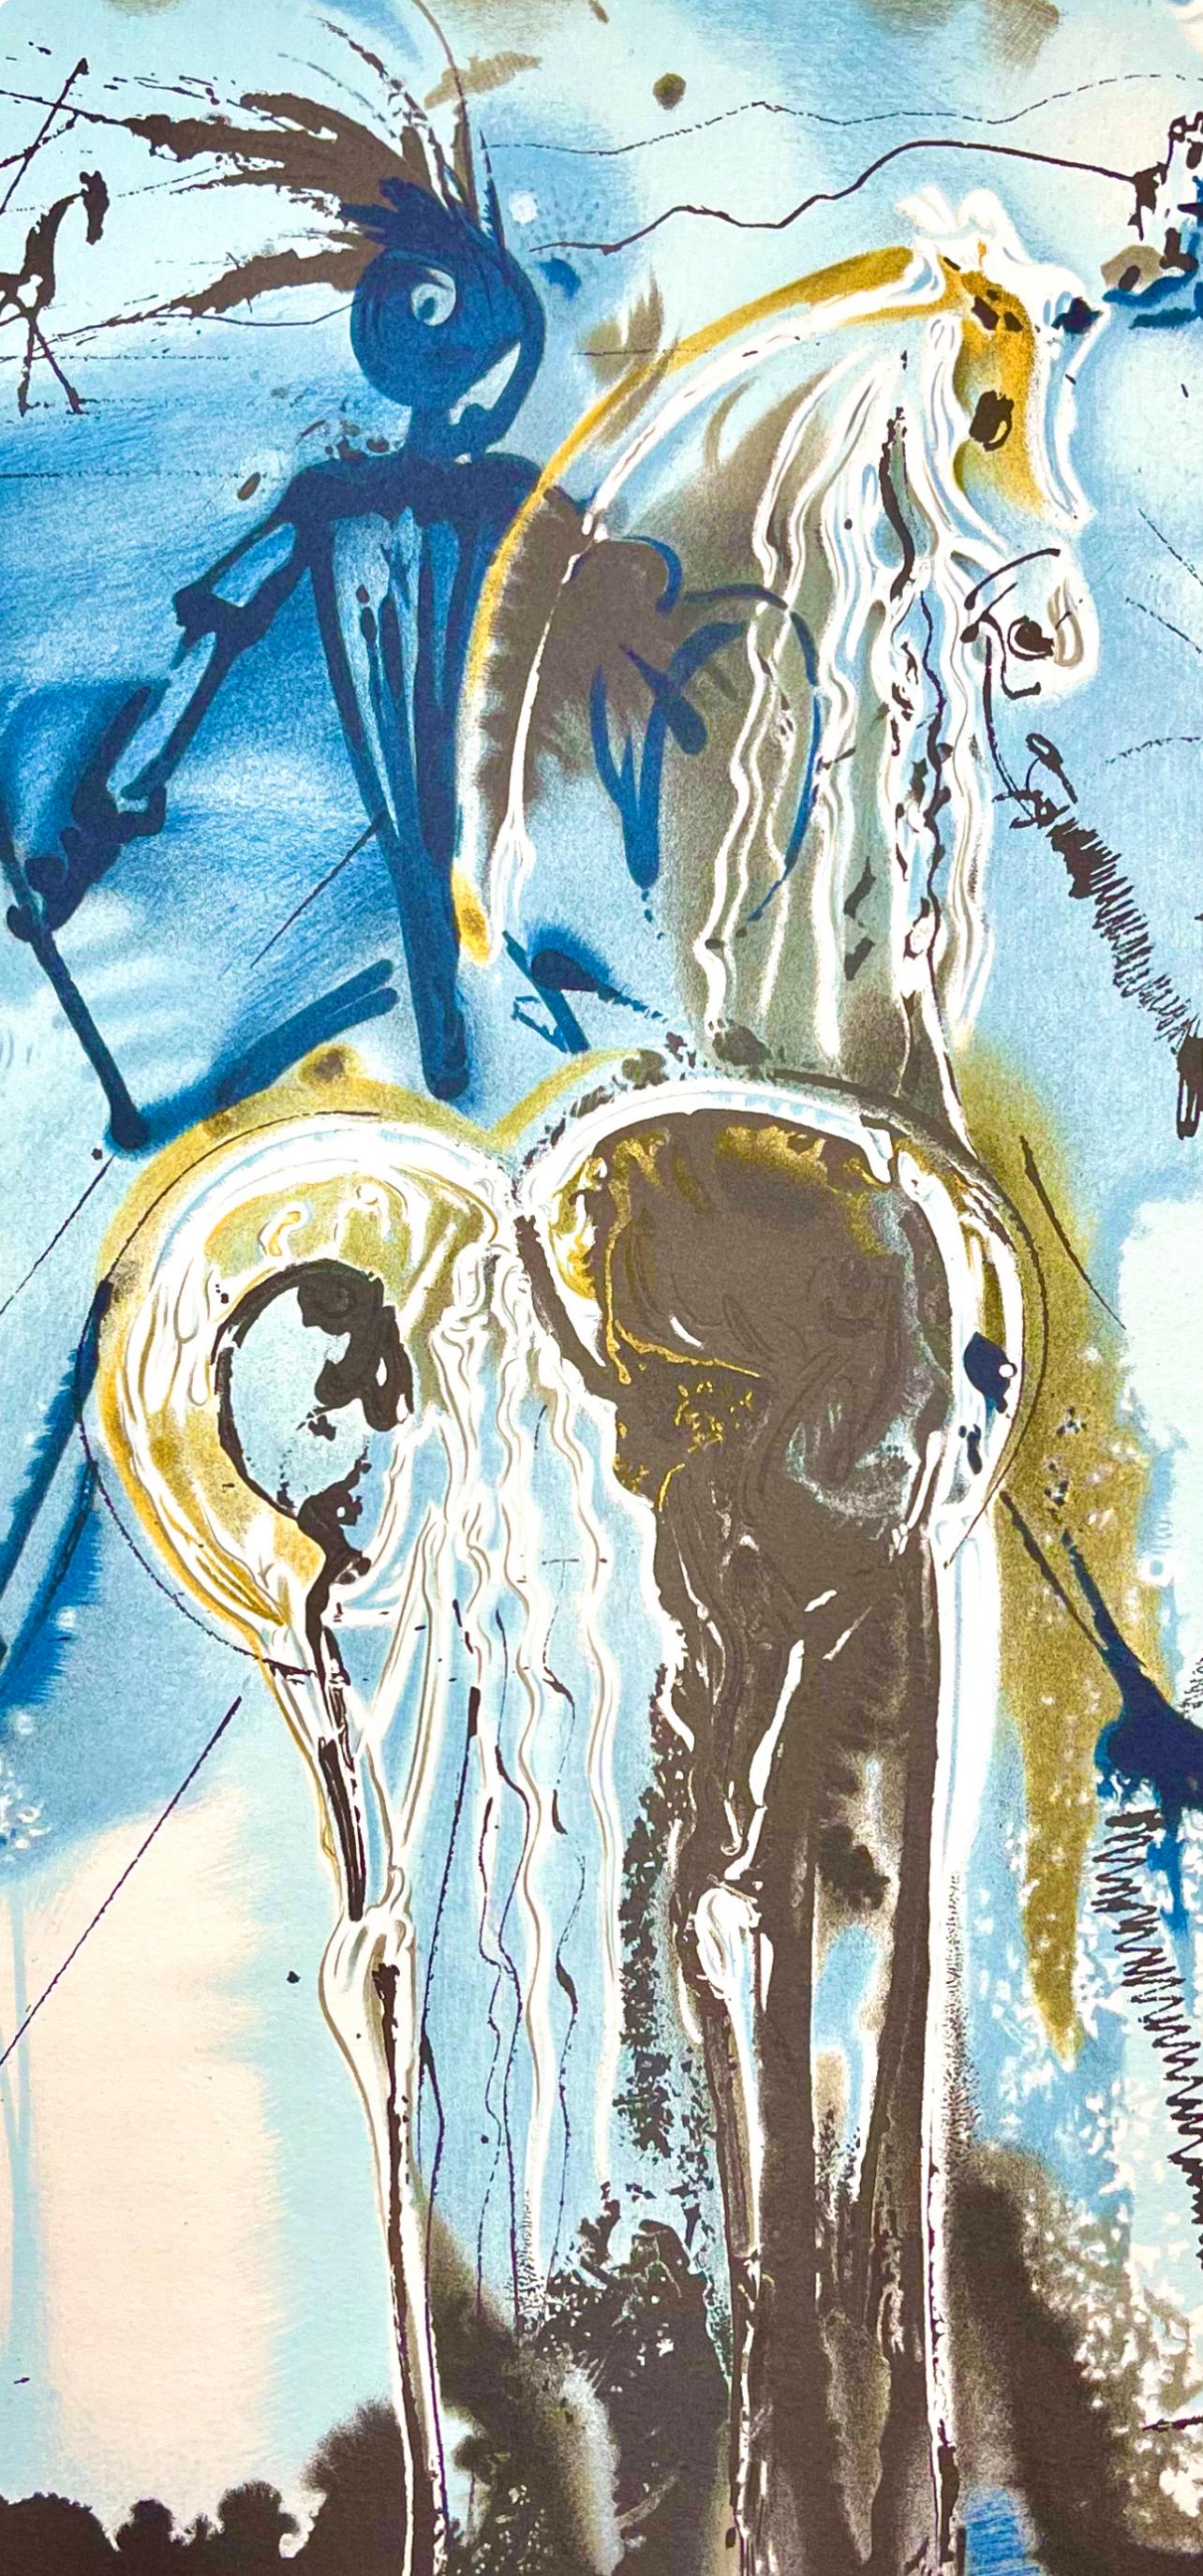 Dalí, Don Quichotte, Les Chevaux de Dali (dopo) - Print di Salvador Dalí